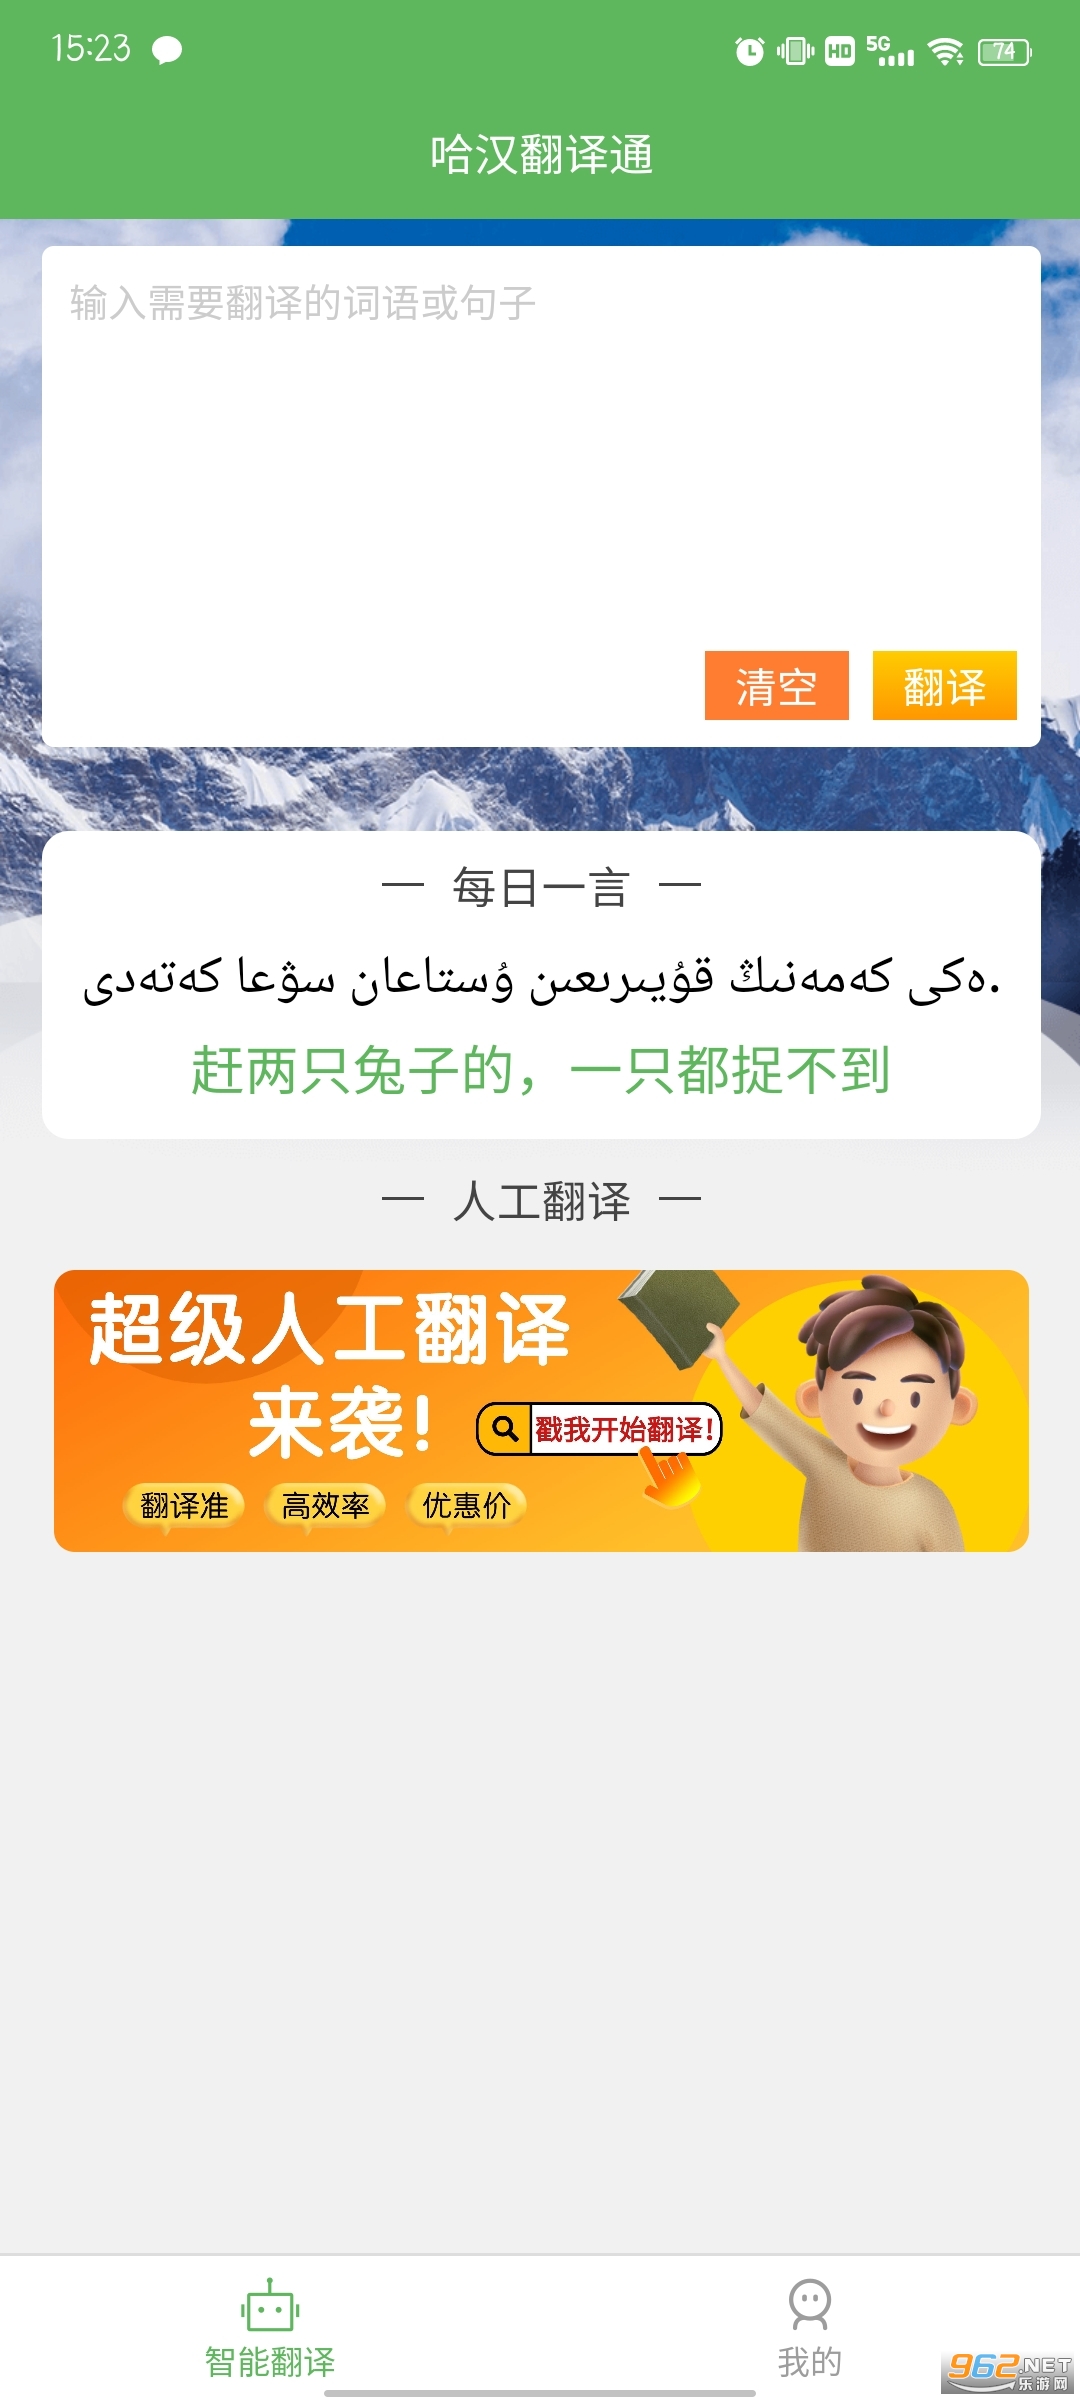 哈汉翻译通app 手机版 v2.9.4